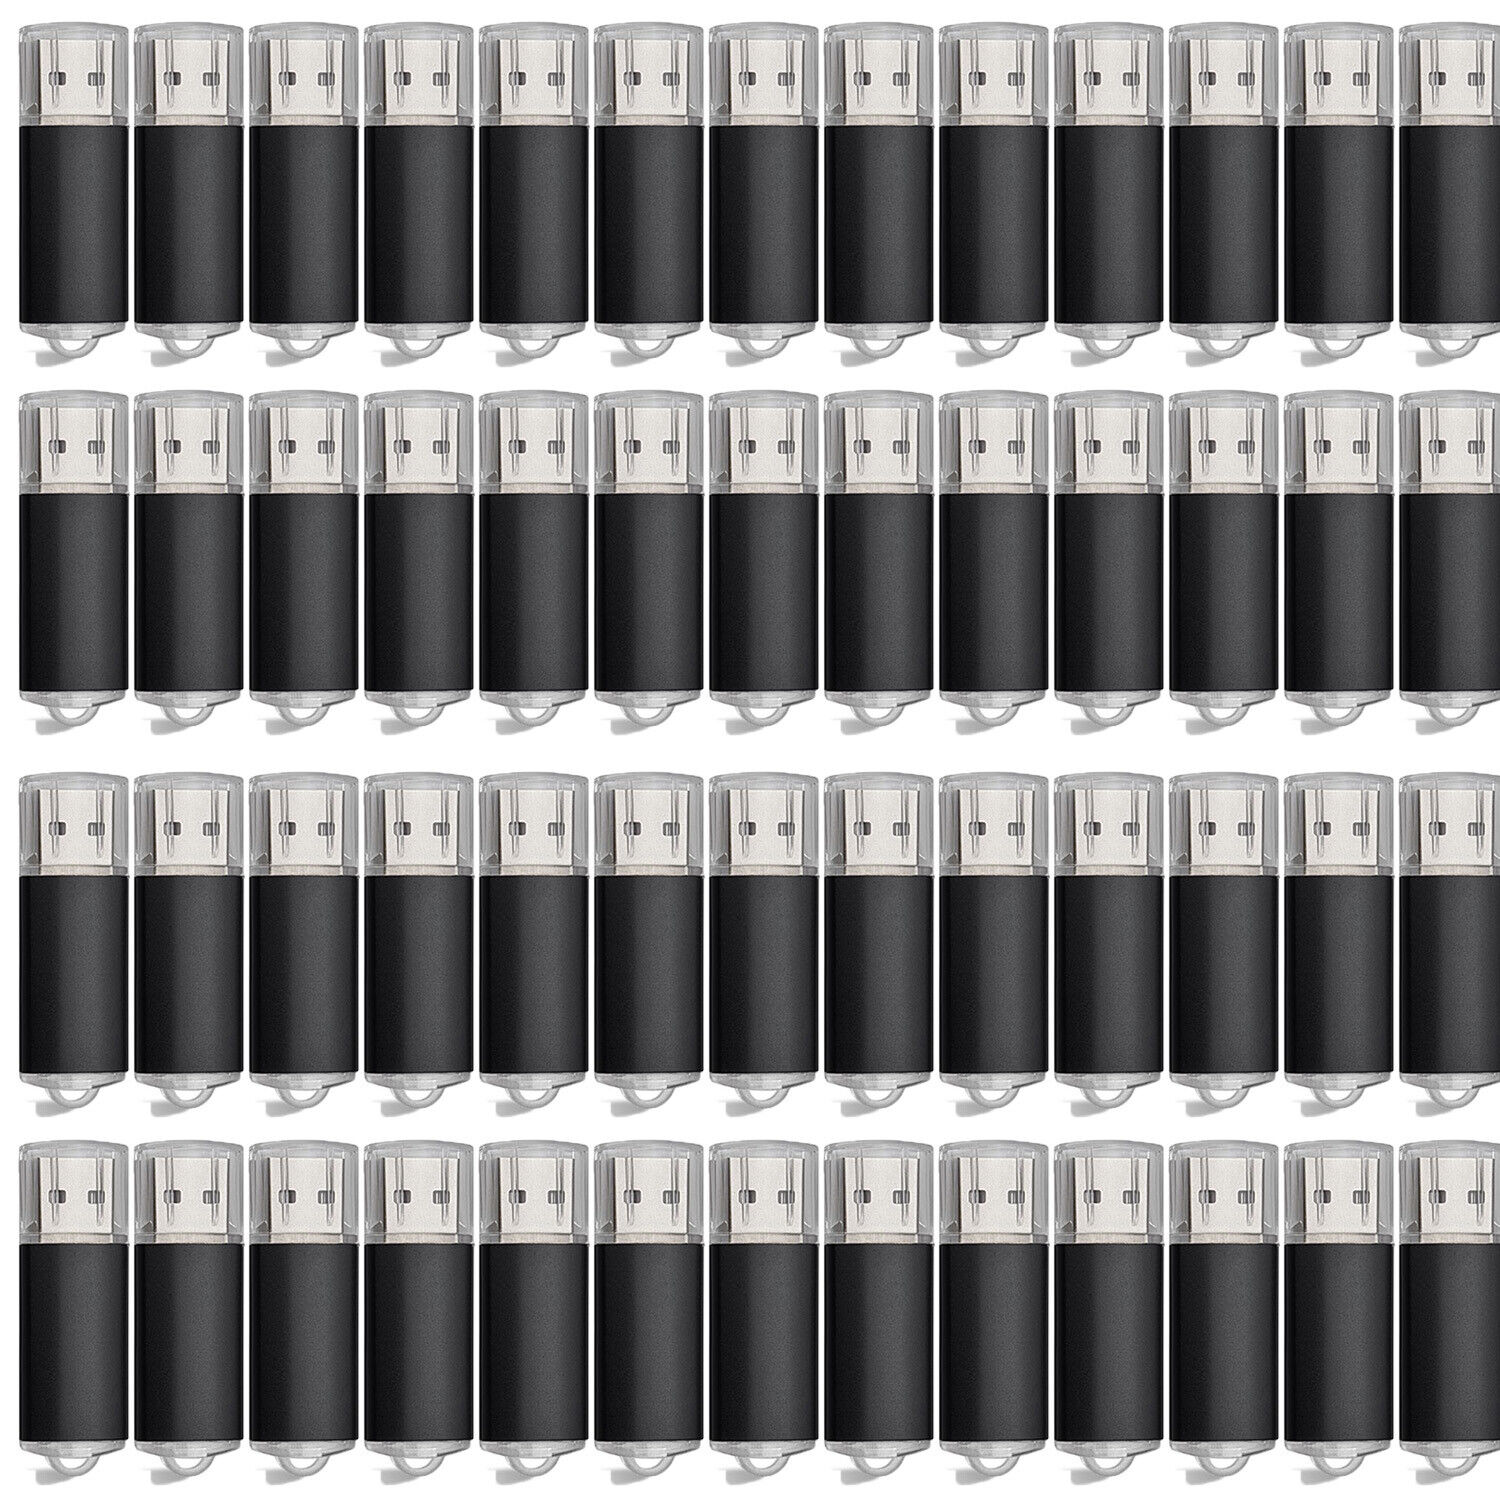 Kootion 50pcs 16GB USB 2.0 Metal Rectangle USB Flash Drive Memory Stick PenDrive